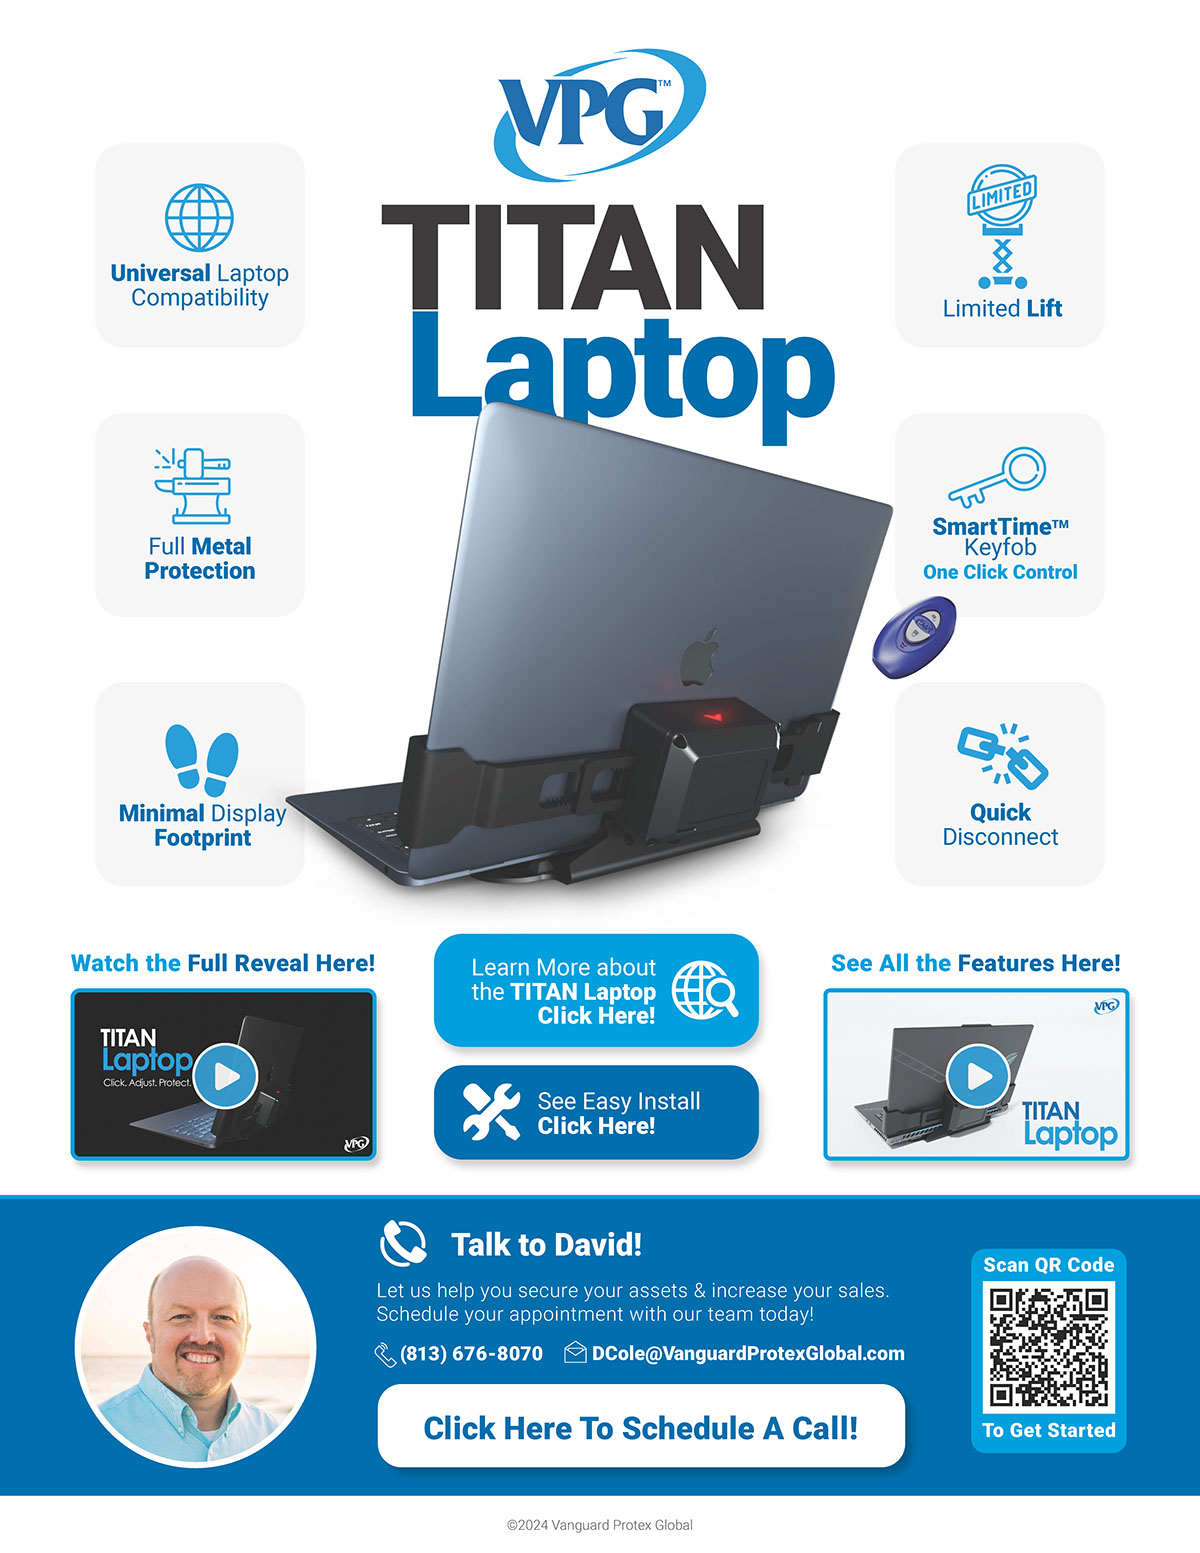 TITAN Laptop Features Sheet rendition image